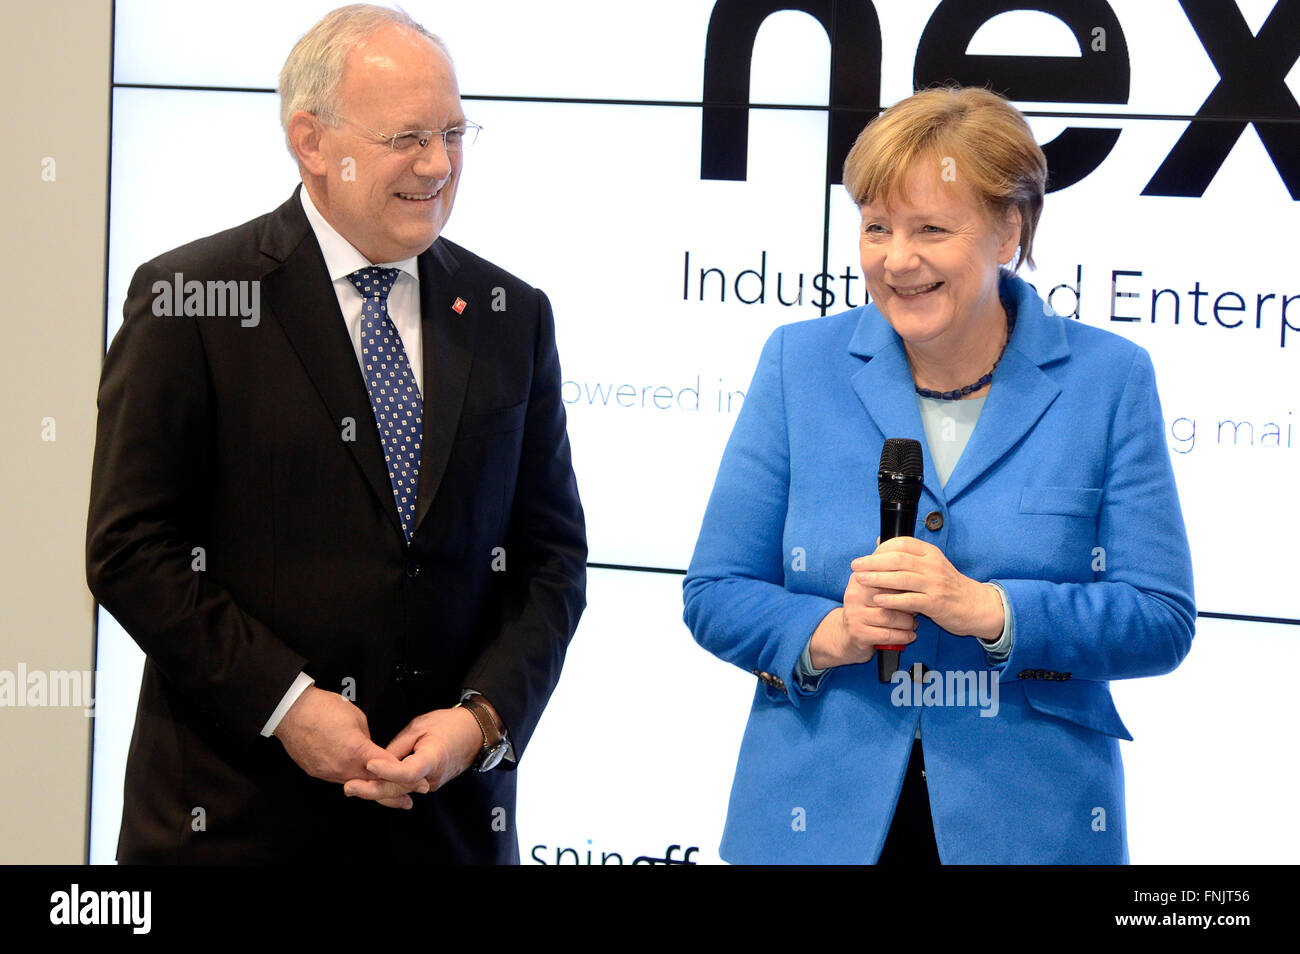 Hannover, Germania. Xv Mar, 2016. Il presidente svizzero Johann Schneider-Ammann e il Cancelliere tedesco Angela Merkel (CDU), durante il loro tour della fiera CeBIT di Hannover, Germania, 15 marzo 2016. La Svizzera è il paese partner del CeBIT di quest'anno, ossia fino al 18 marzo 2016. Credito: dpa/Alamy Live News Foto Stock